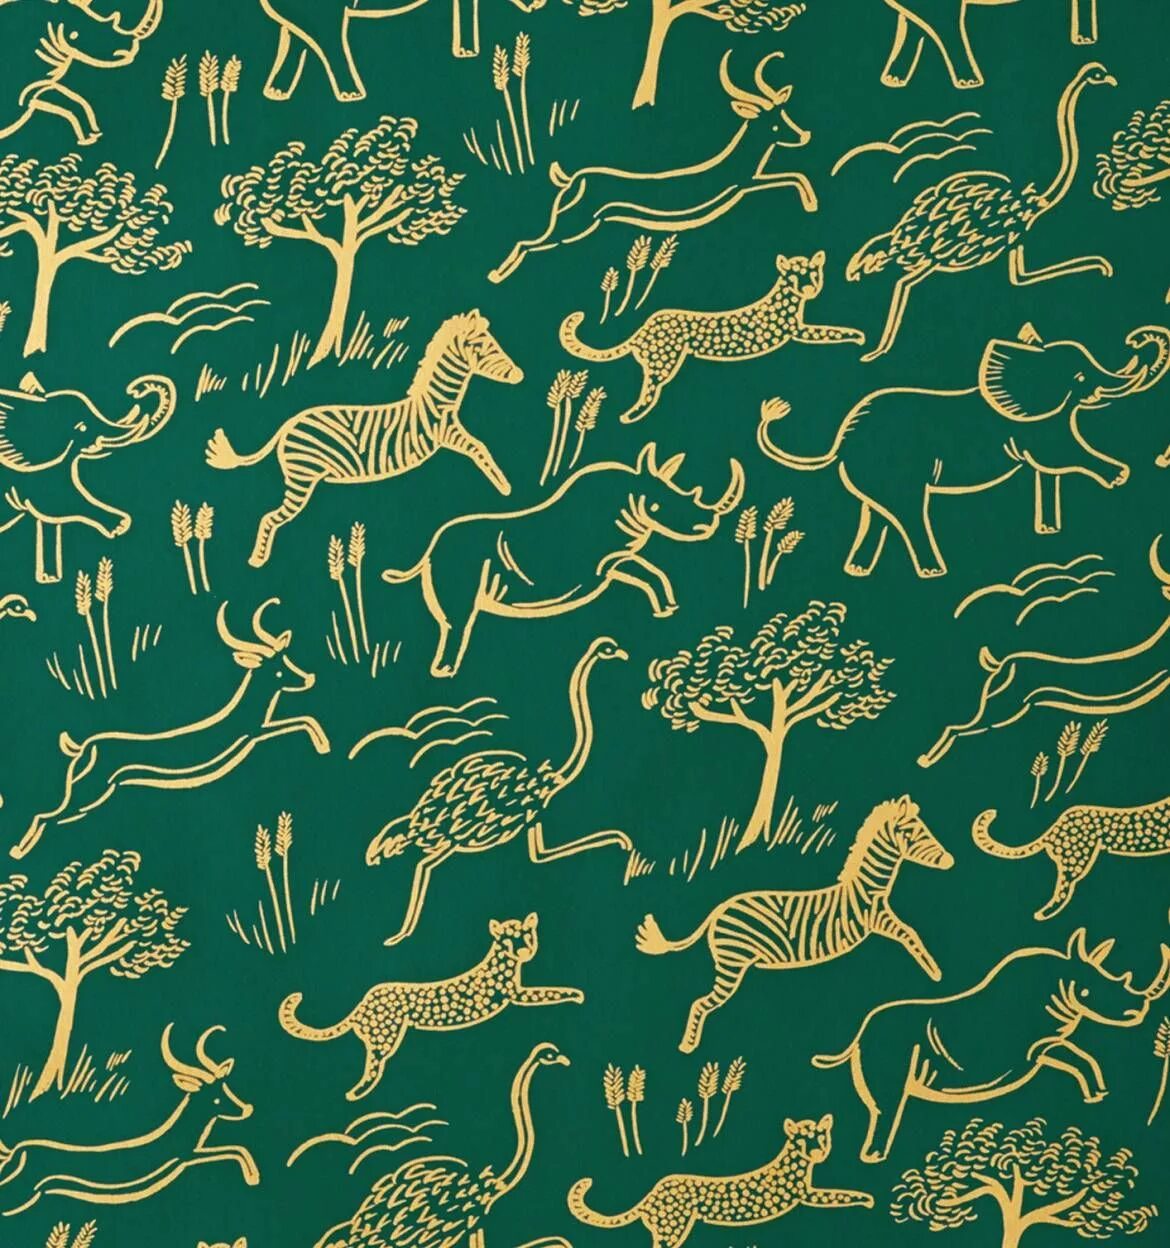 Animal pattern. Принт сафари джунгли. Принты животных. Принты с животными. Паттерн животные.